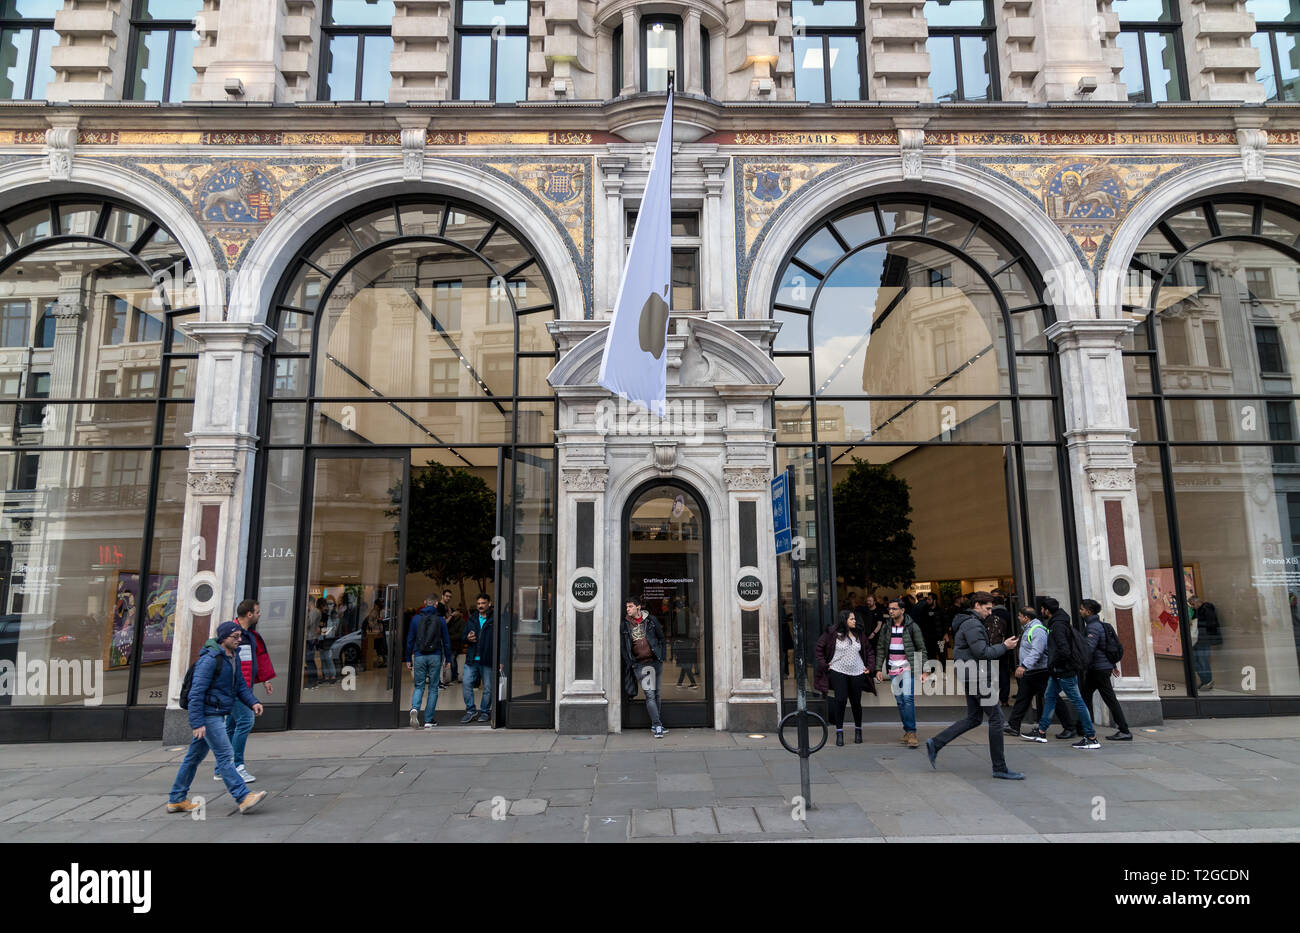 LONDON - MARCH 27, 2019: Apple Store on Regent Street in London Stock Photo